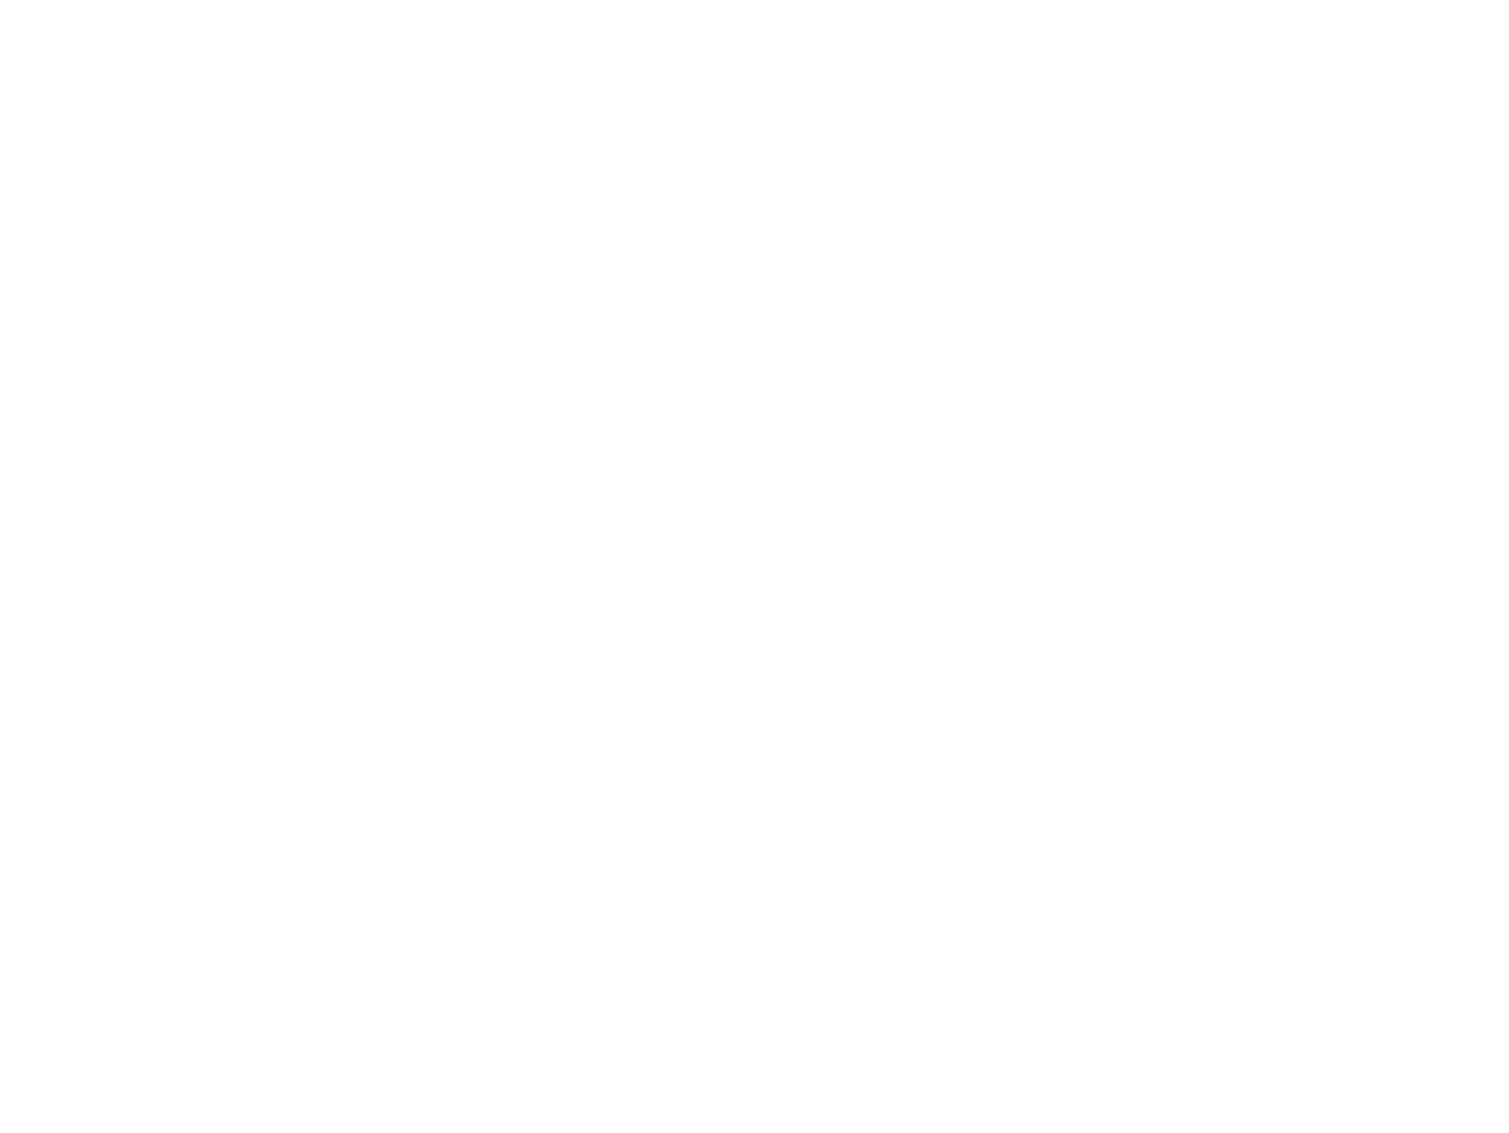 Sojitz Corporation logo for dark backgrounds (transparent PNG)